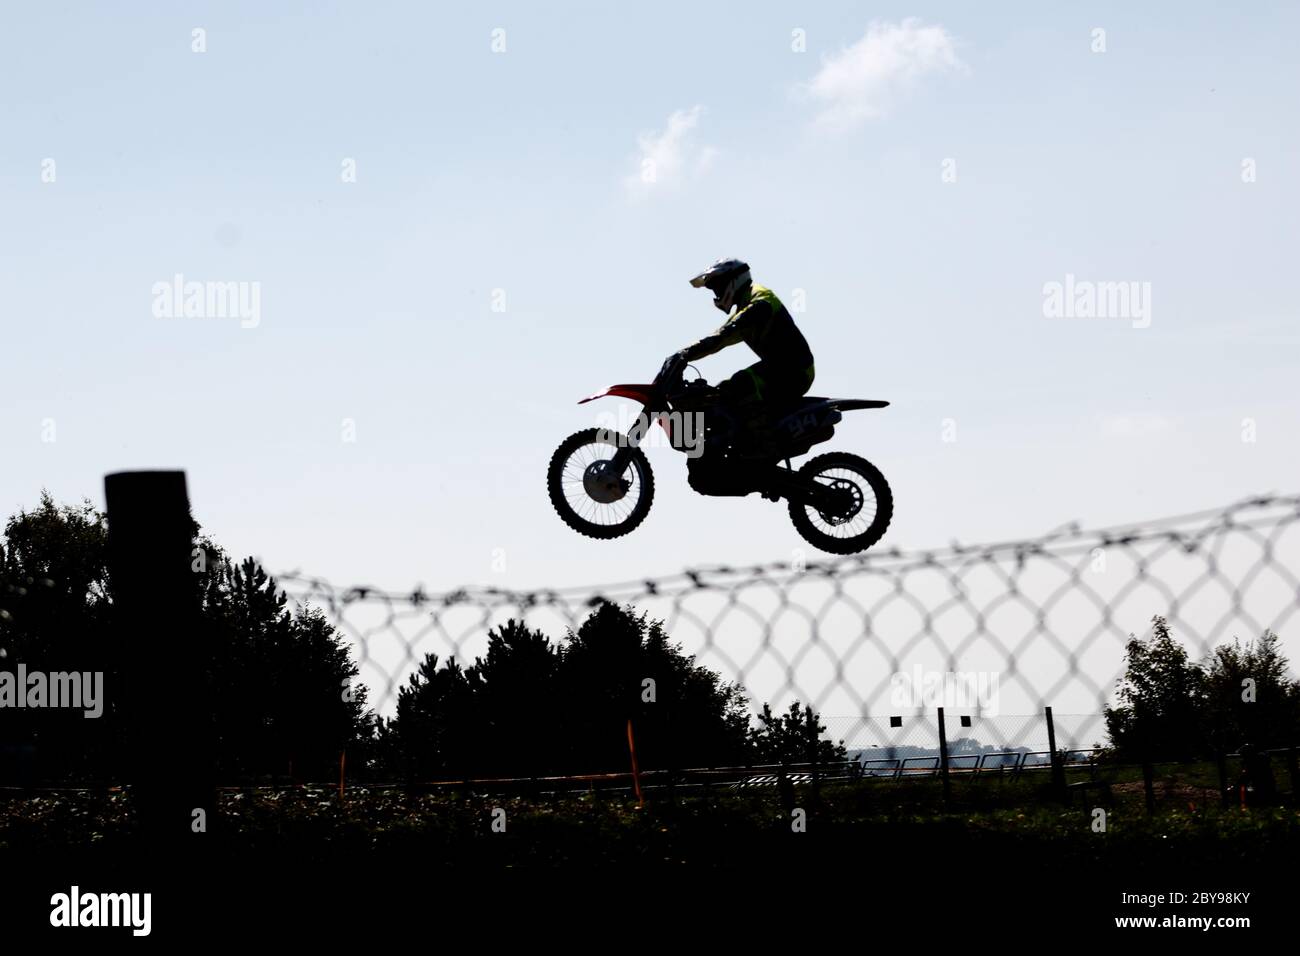 un vélo de motocross sautant et il semble qu'il suit une ligne de fer Banque D'Images